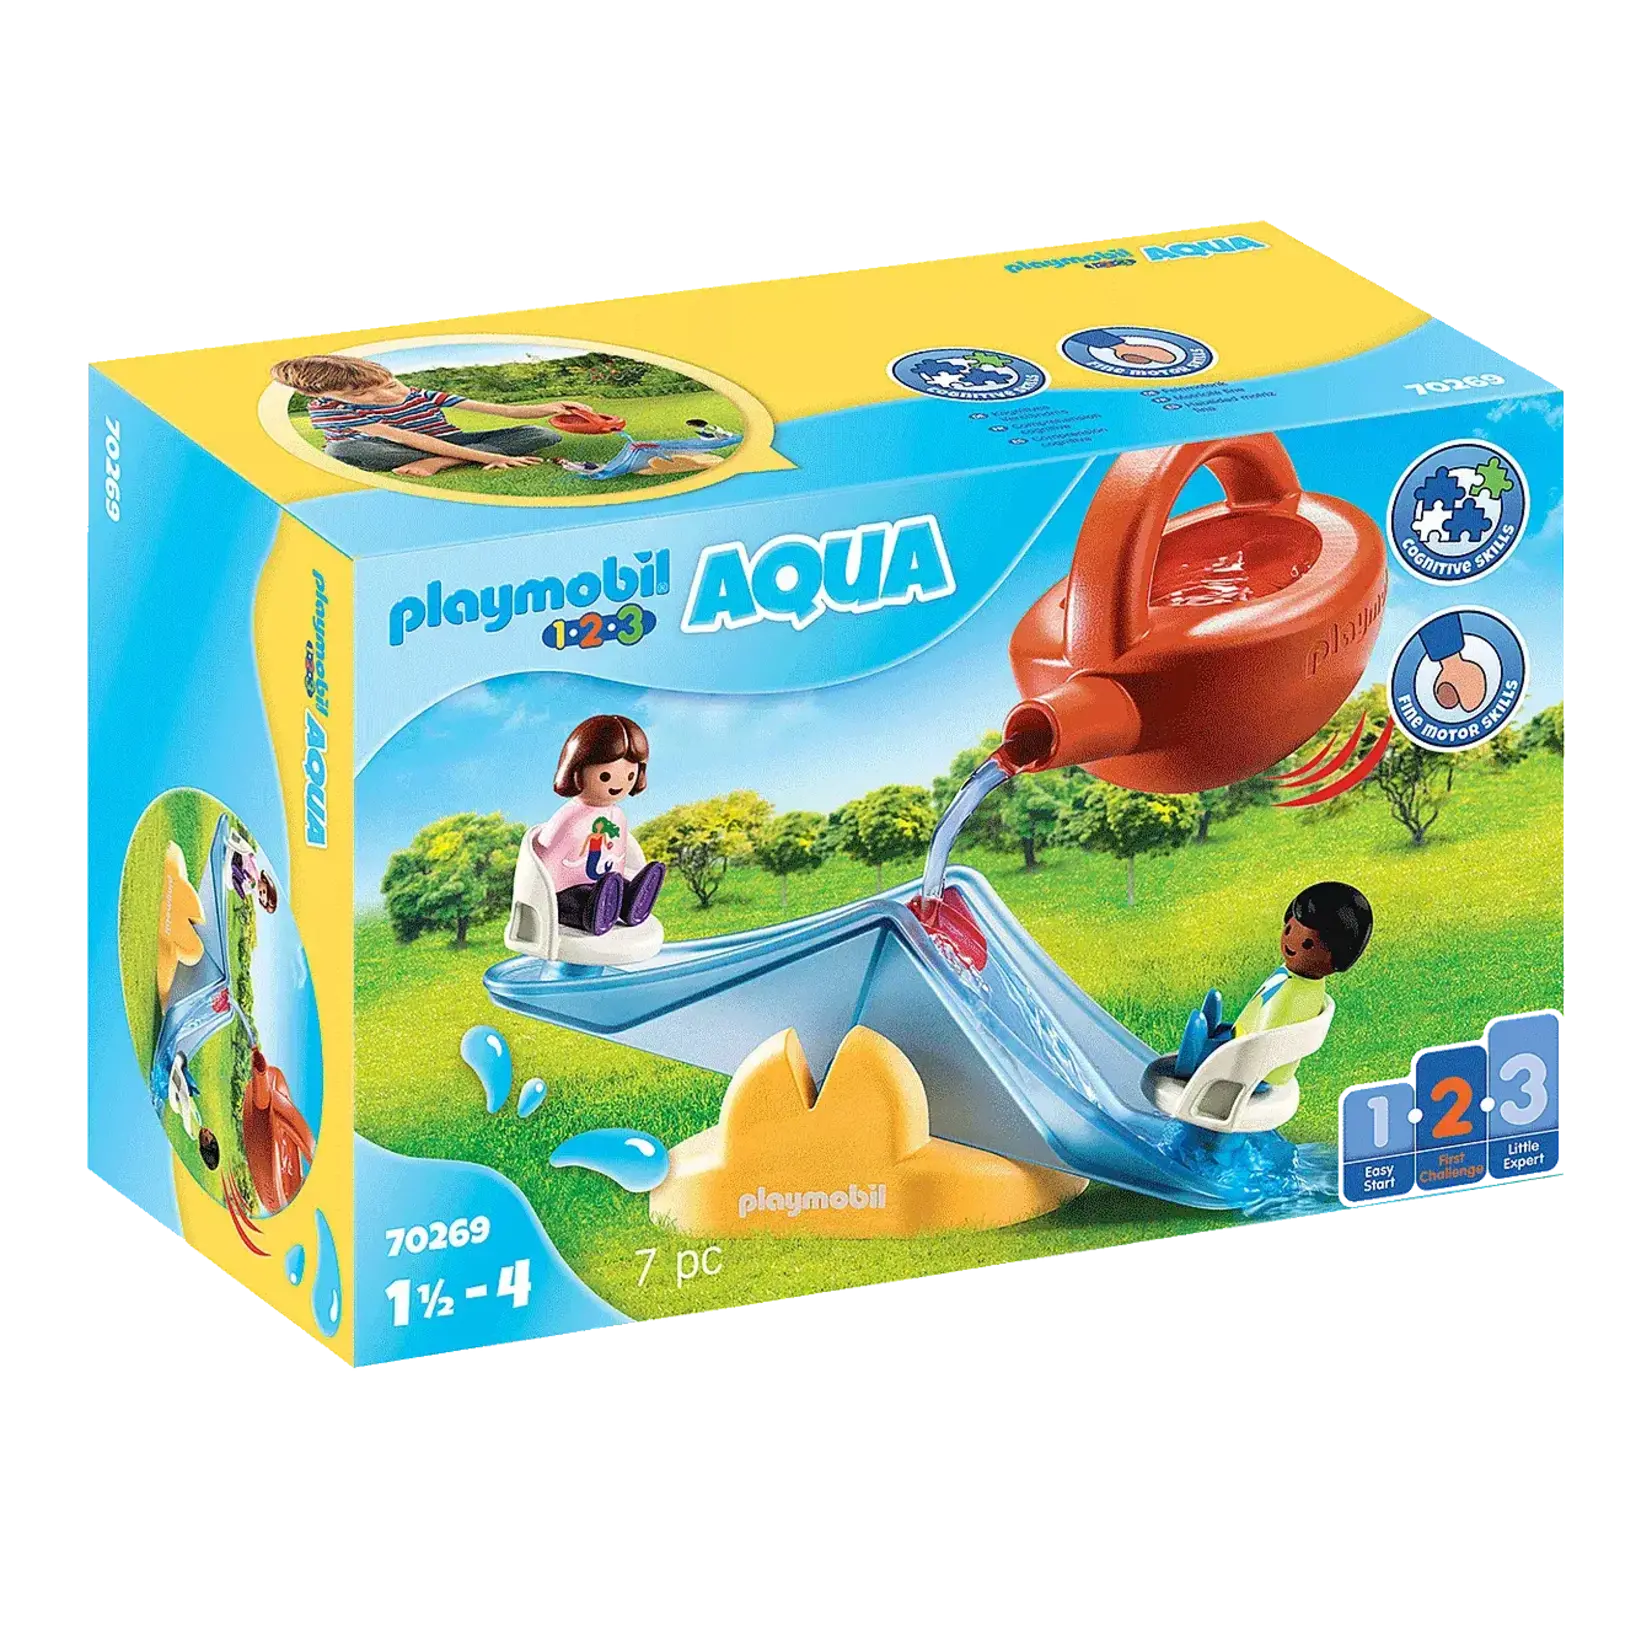 Playmobil *****Playmobil 1.2.3 Aqua 70269 - Balançoire aquatique avec arrosoir